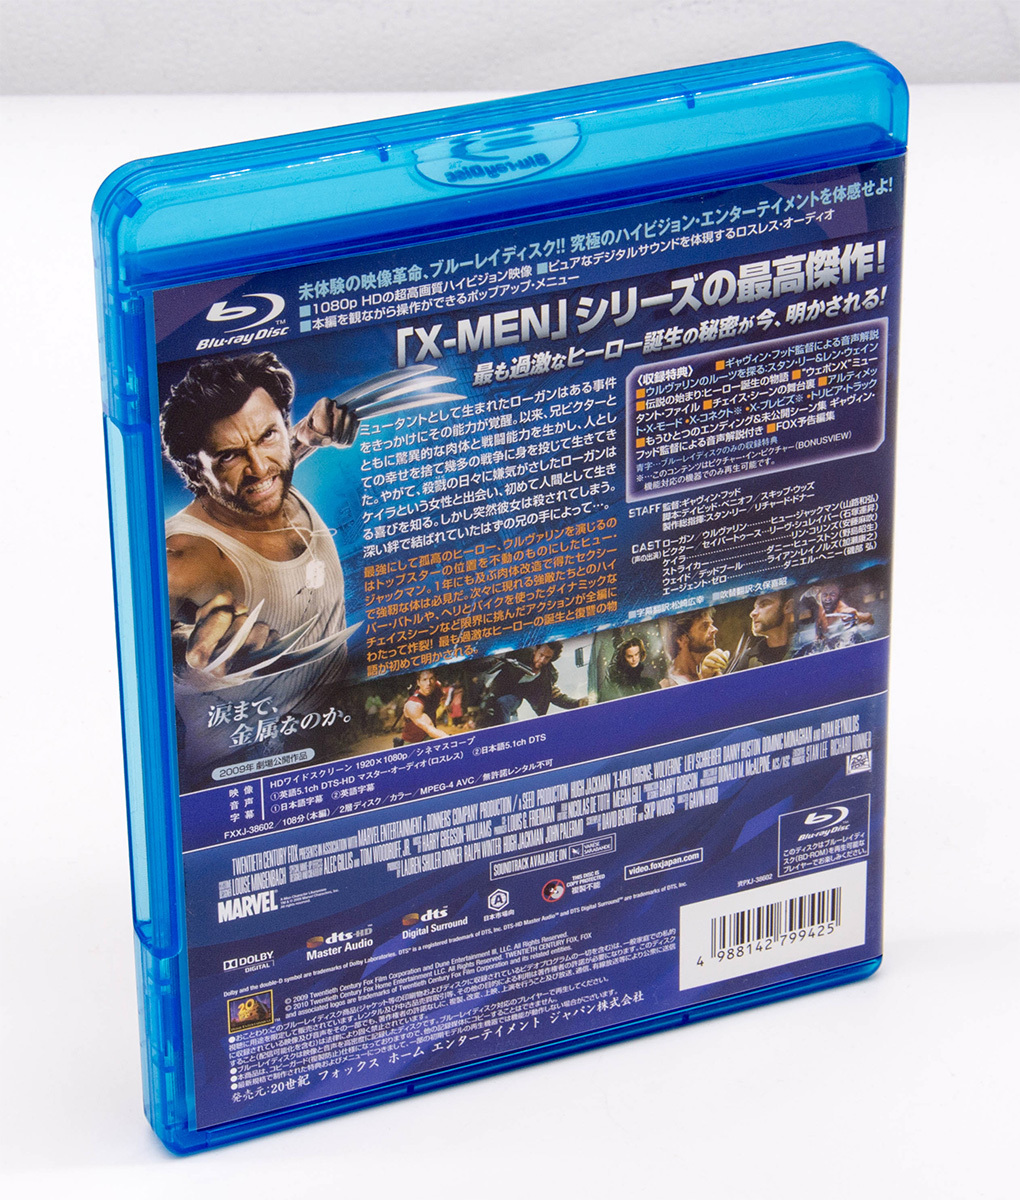 ウルヴァリン: X-MEN ZERO X-Men Origins: Wolverine BD+DVD Blu-ray ヒュー・ジャックマン リーヴ・シュレイバー 中古 セル版_画像2